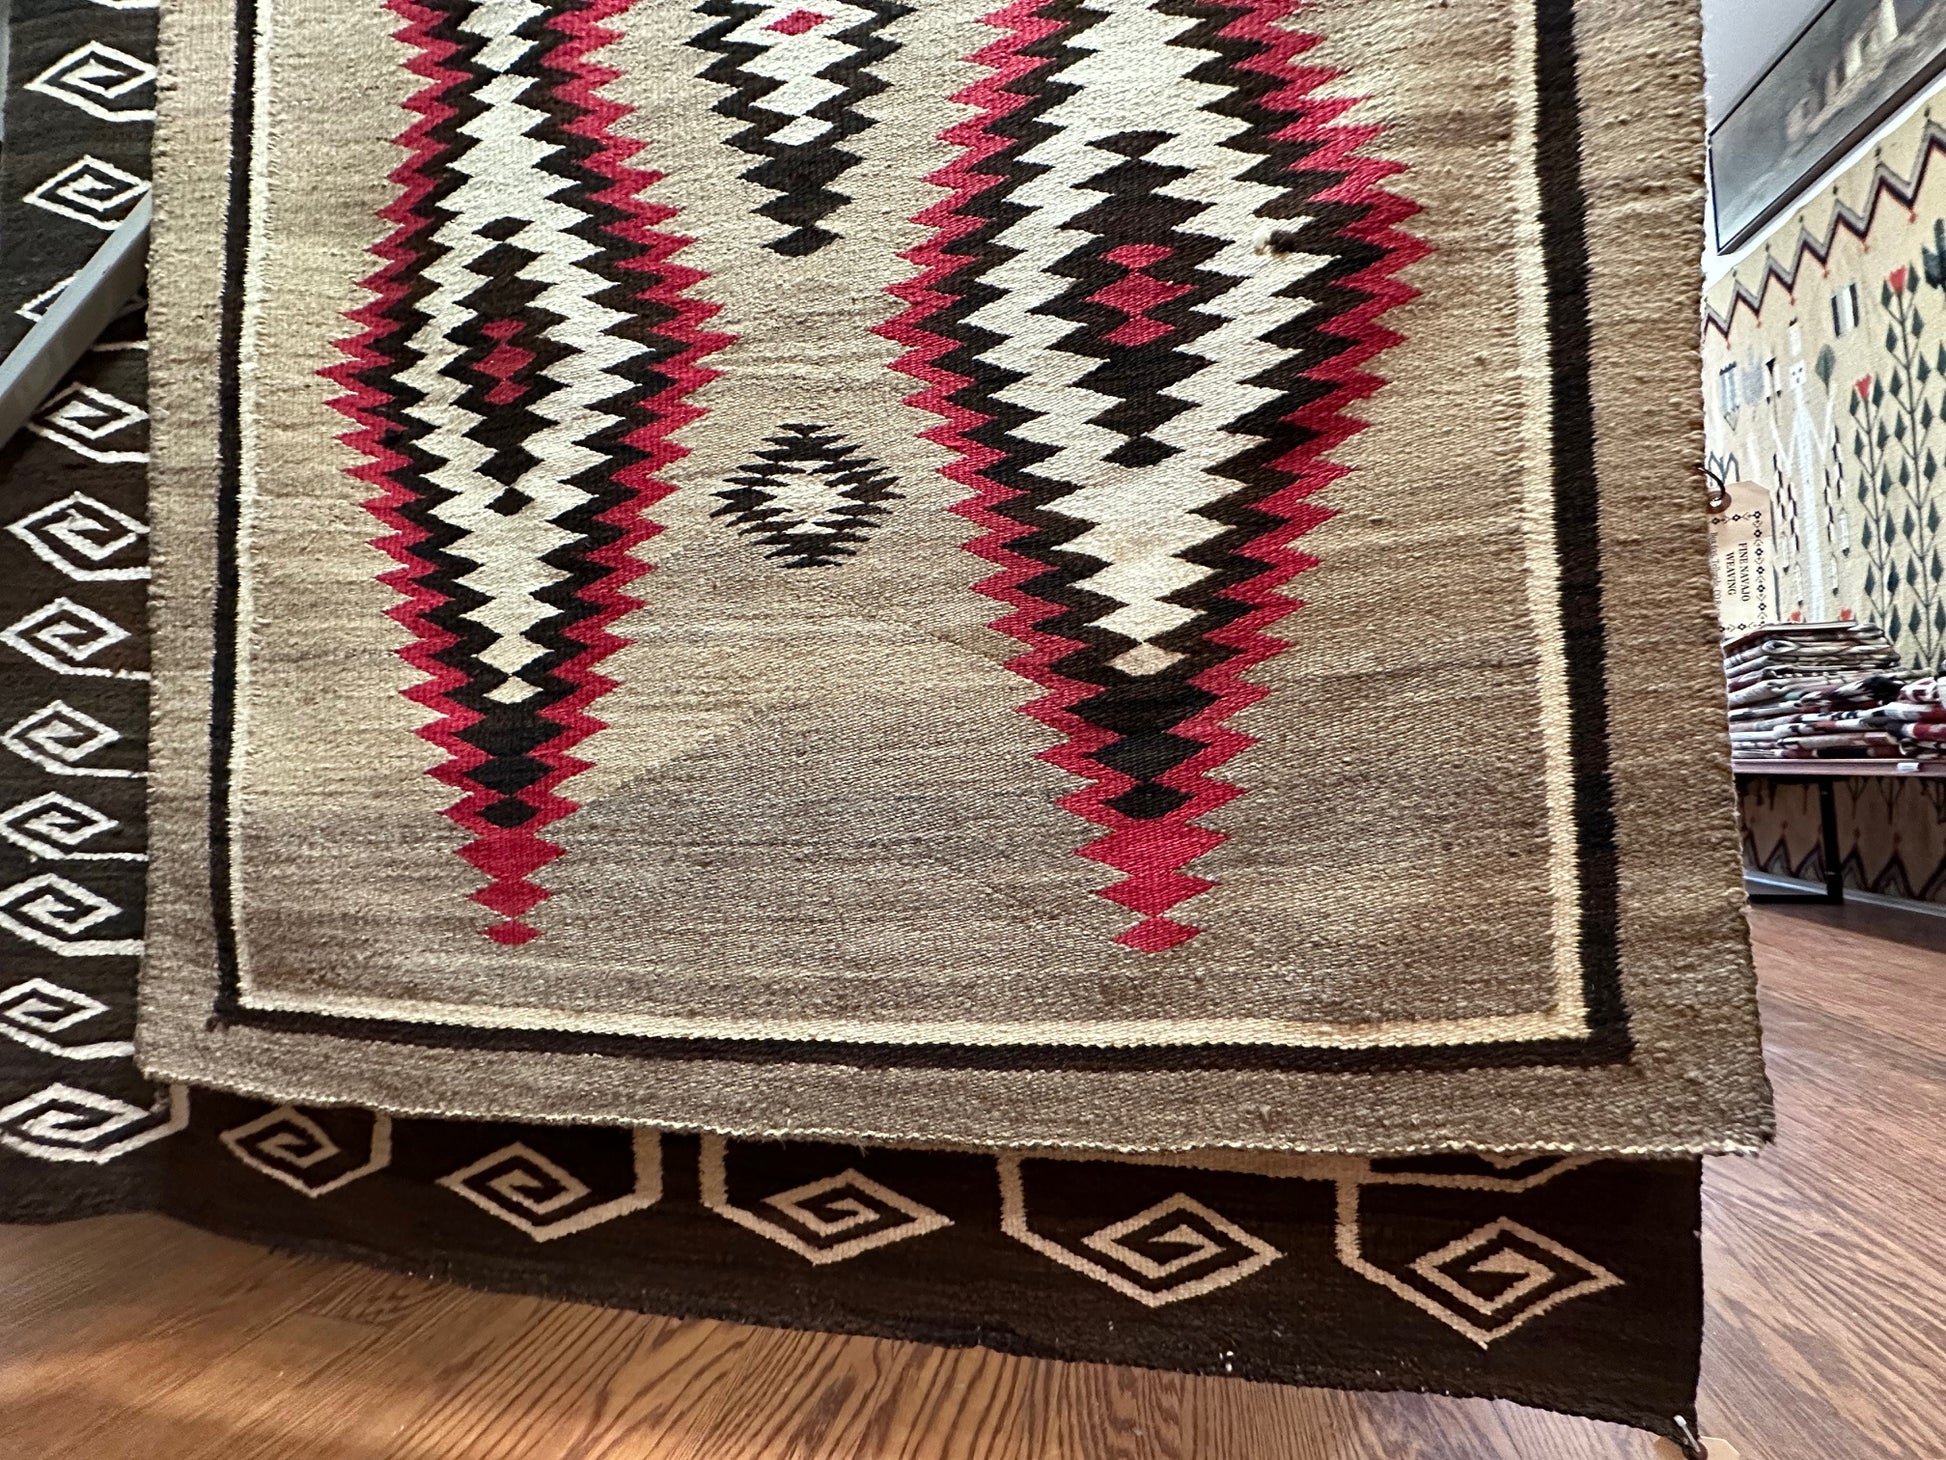 JB Moore Crystal Navajo weaving for sale, navajo rug for sale, antique navajo weaving, telluride gallery